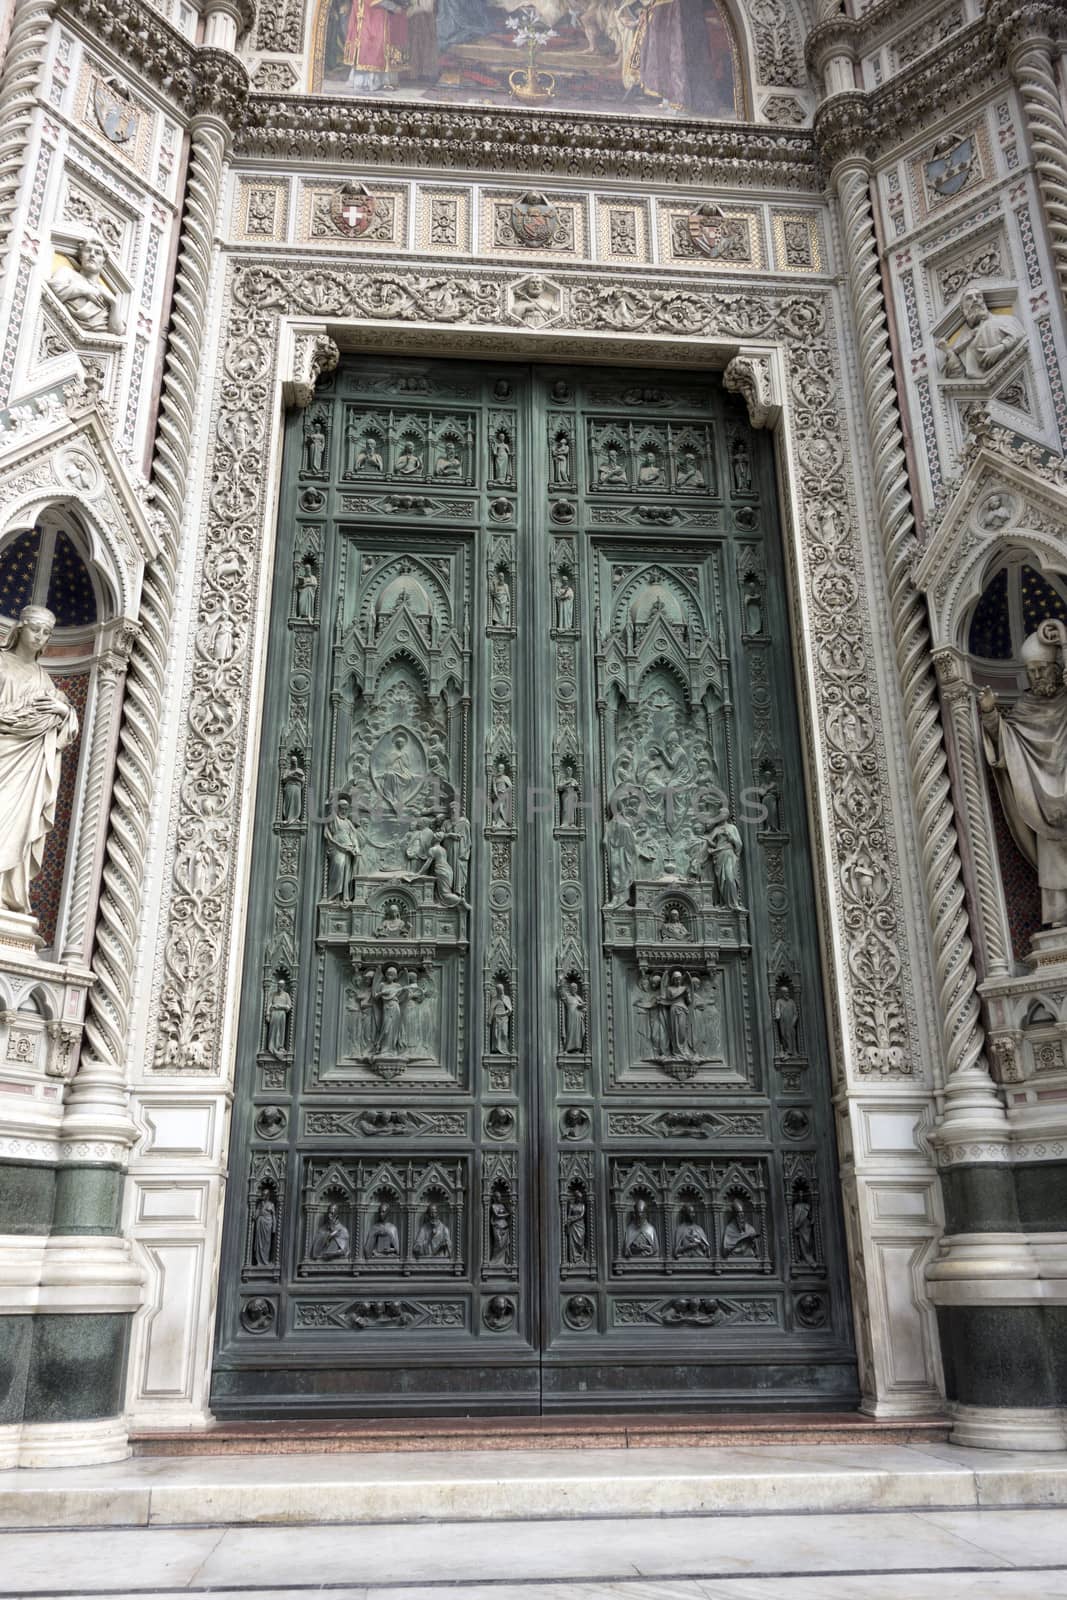 Old Door of Basilica of Santa Maria del Fiore, Florence